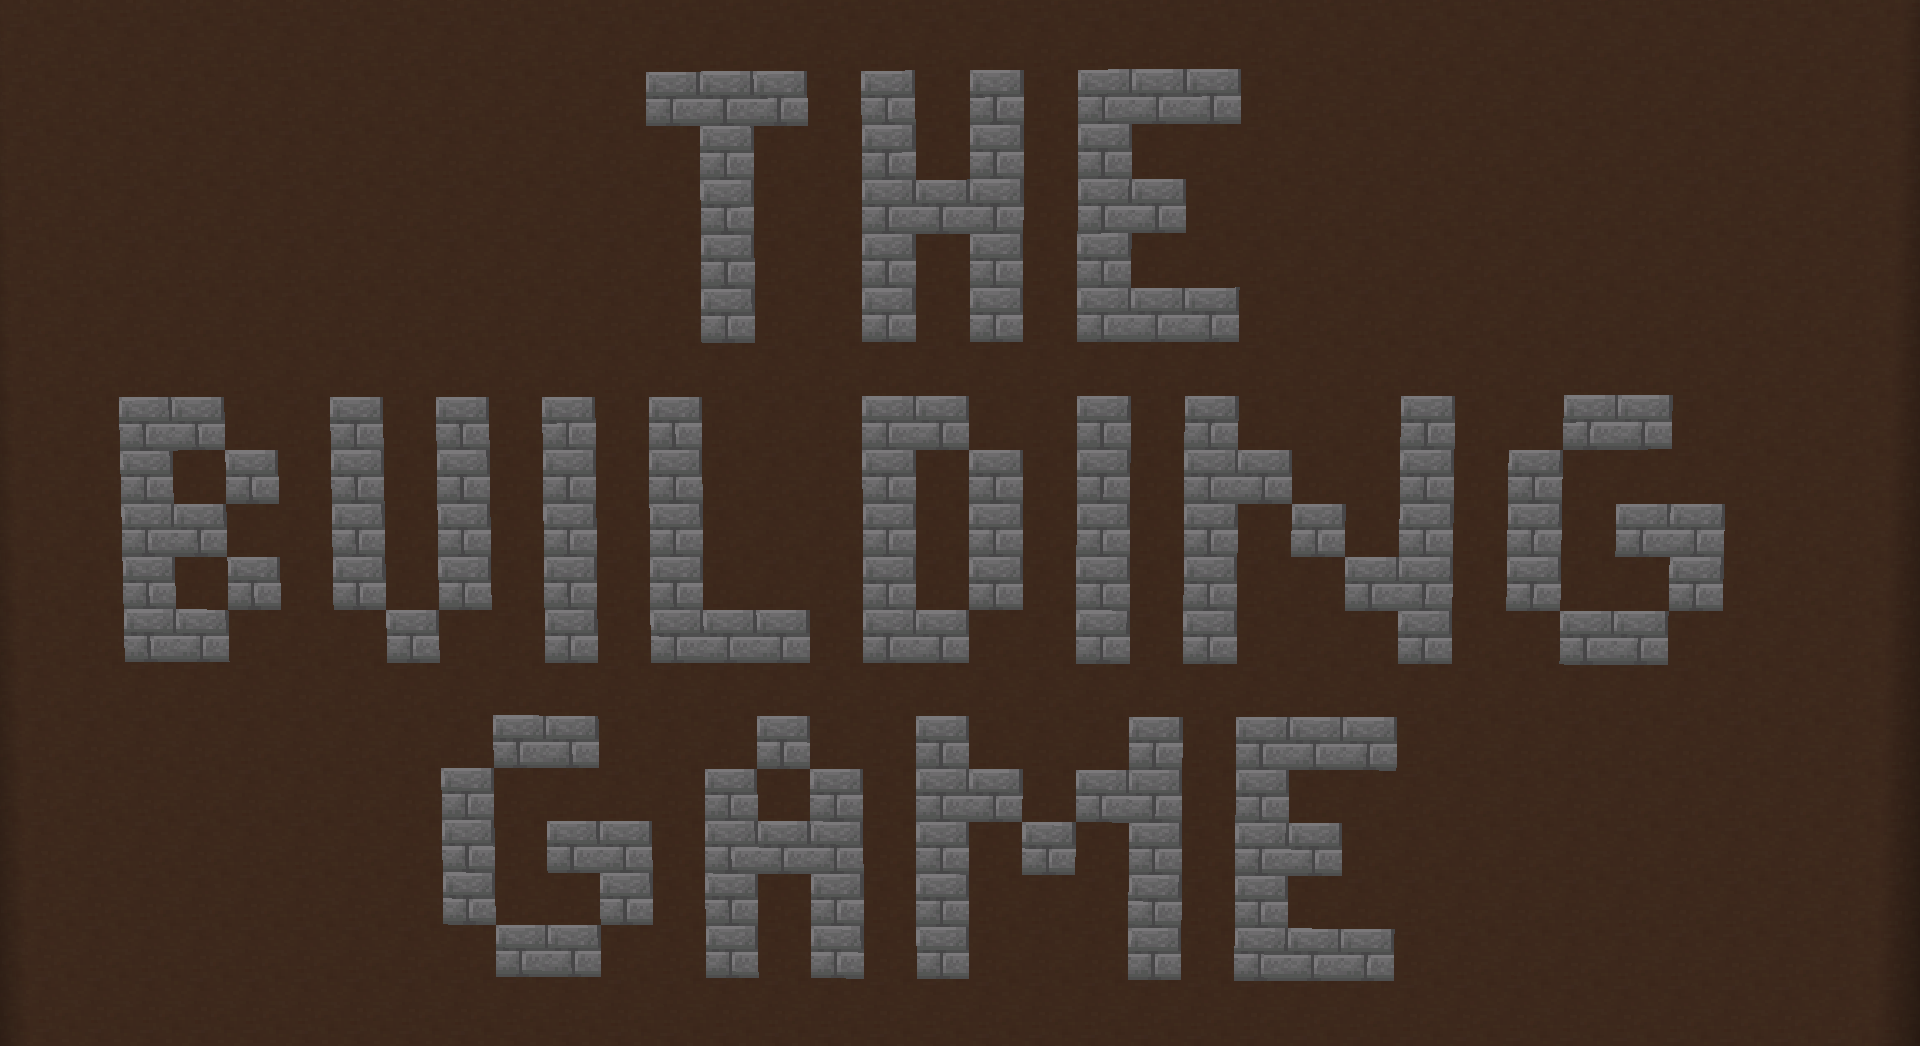 Скачать The Building Game for 1.16 для Minecraft 1.16.4